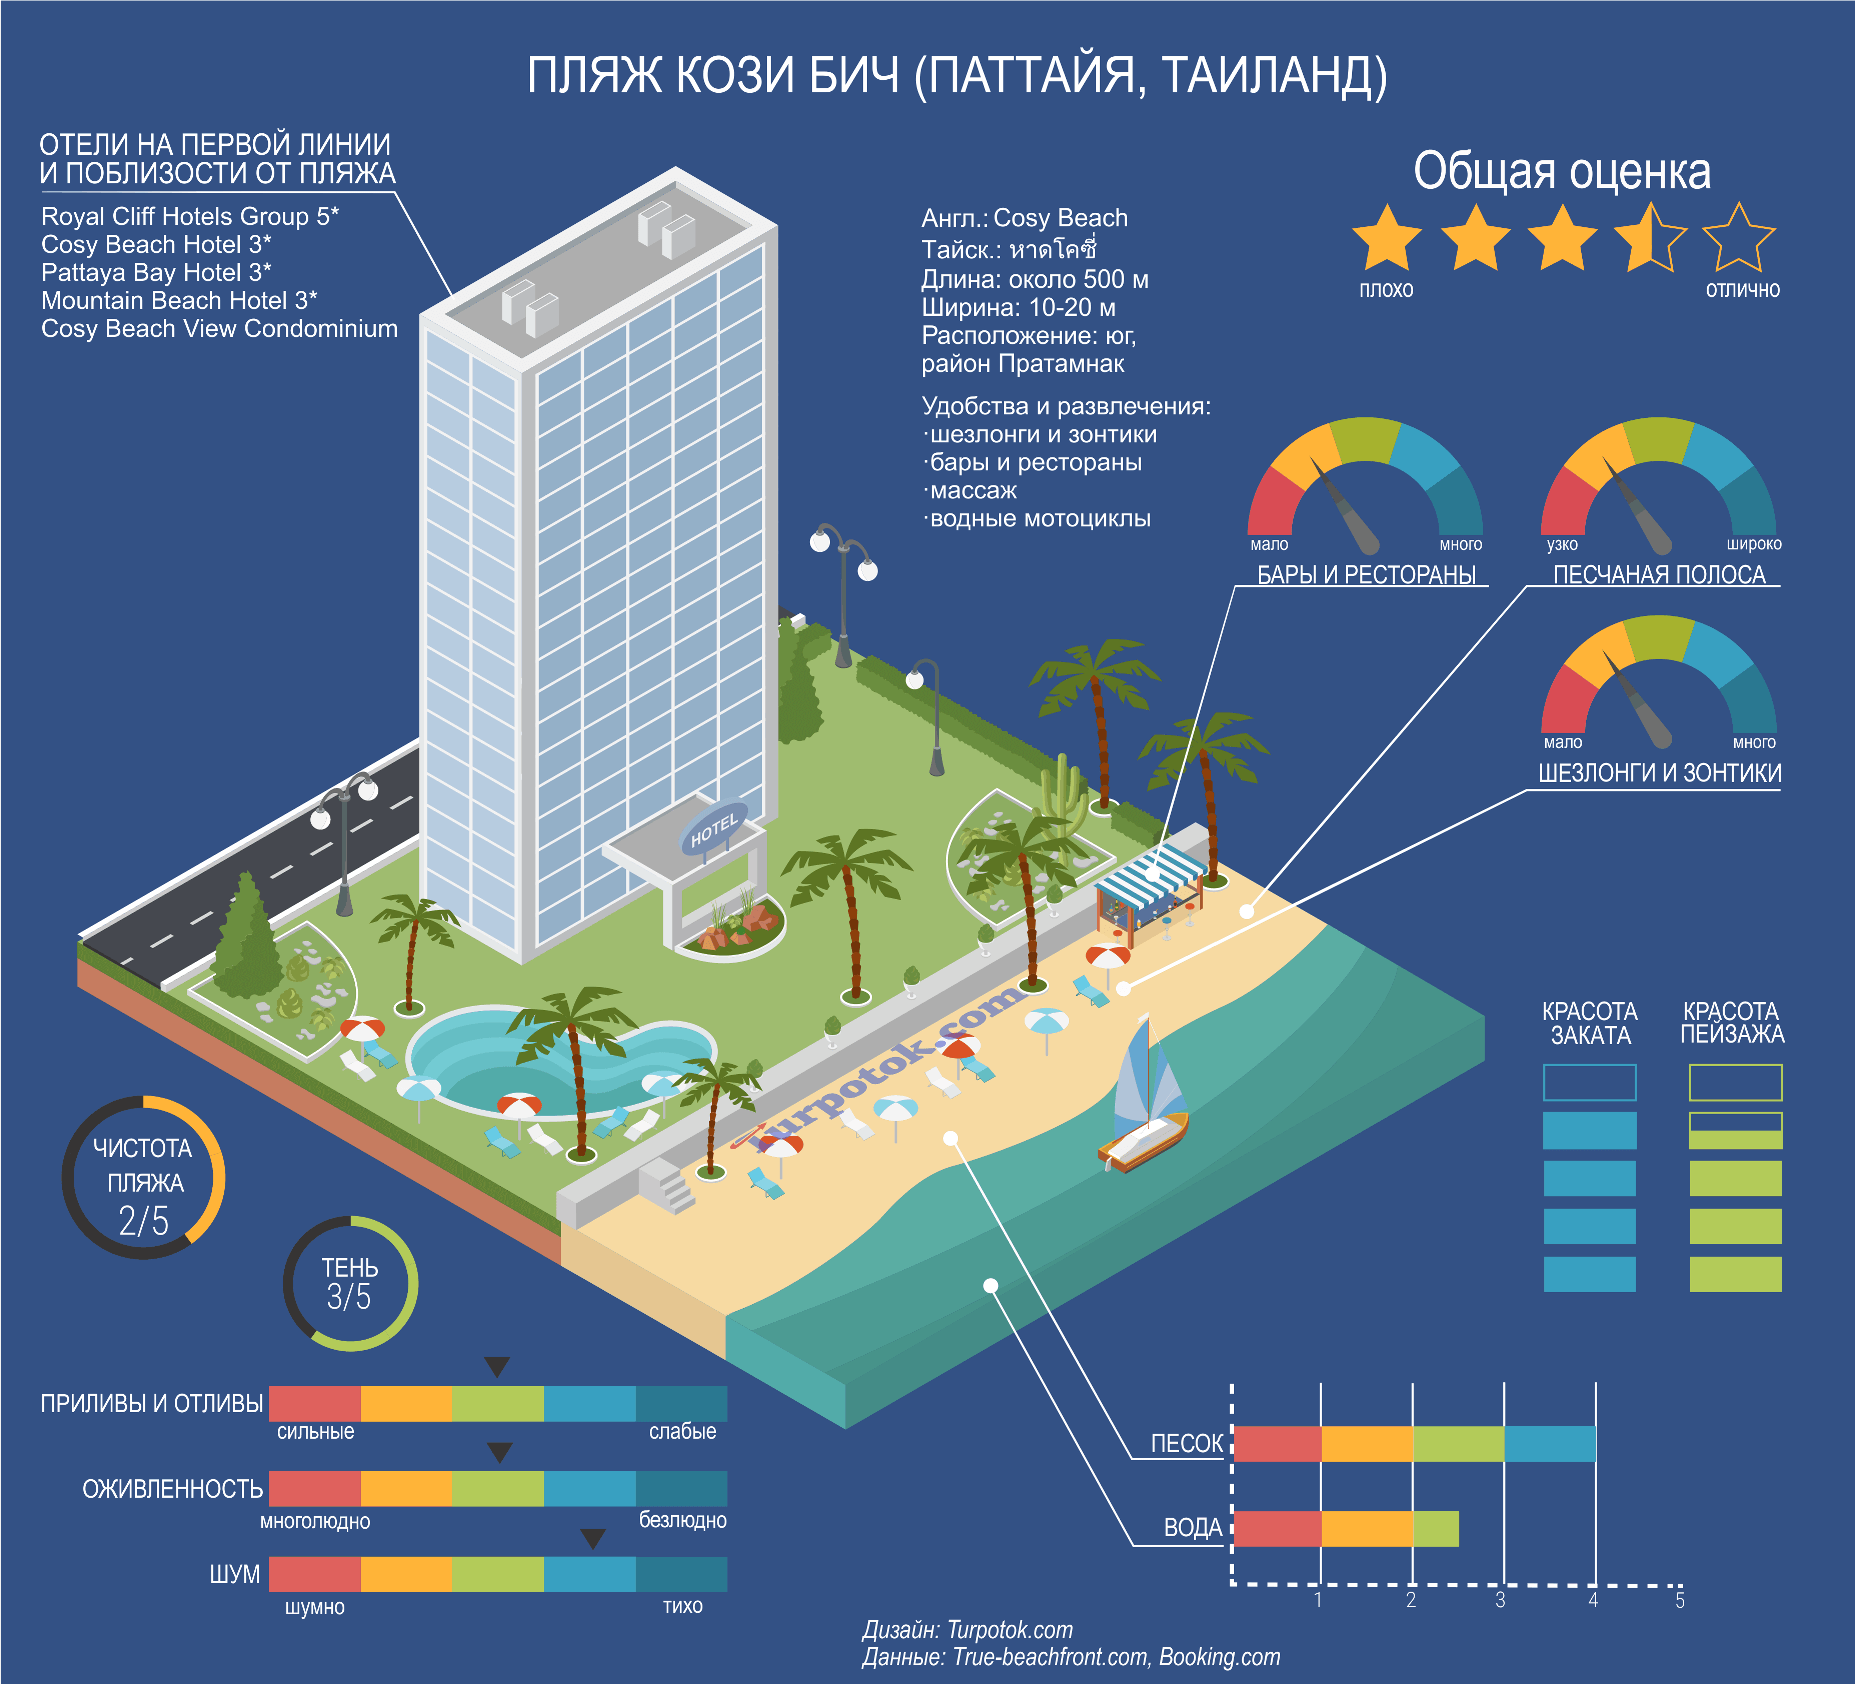 Изображение с инфографикой о пляже Кози Бич (Паттайя)